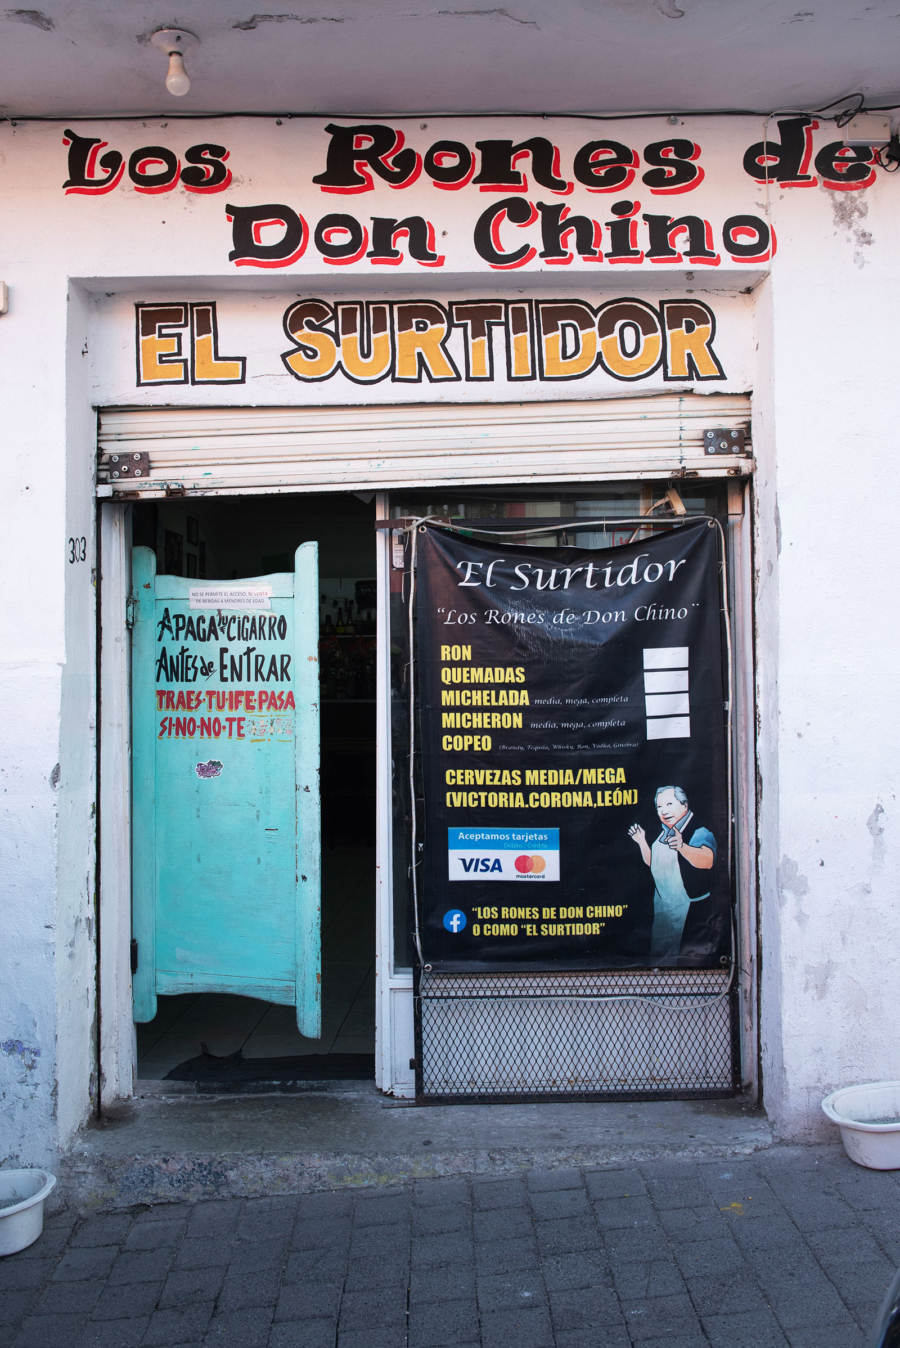 'Cantineando ando' in Pachuca, Hidalgo